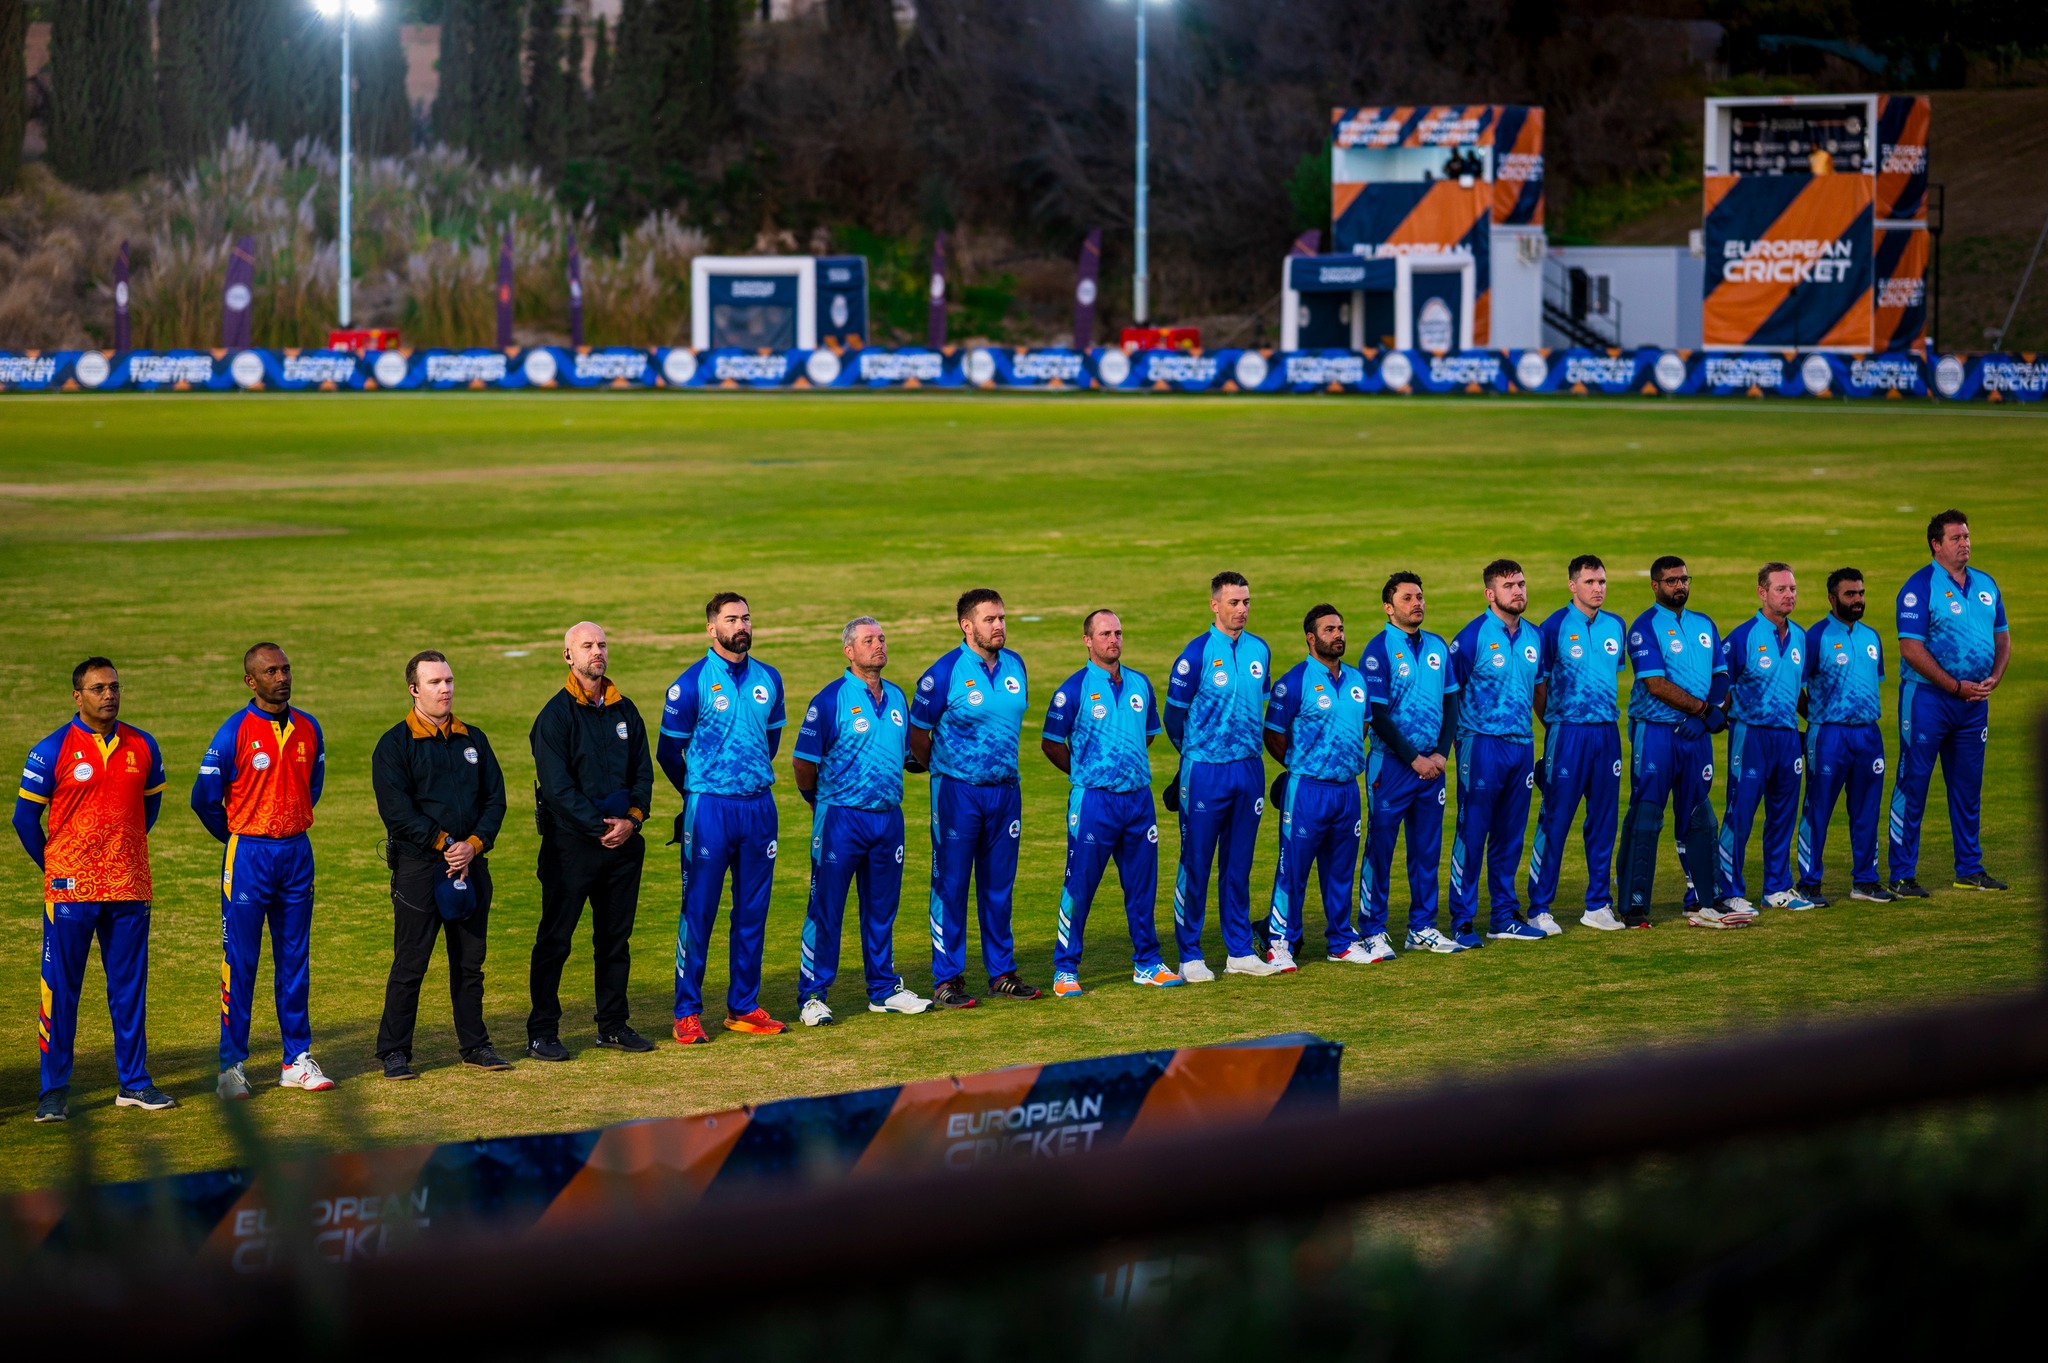 El Sporting Club l’Alfàs Cricket  ha ganado cinco de los seis partidos disputados en la  Liga Europea